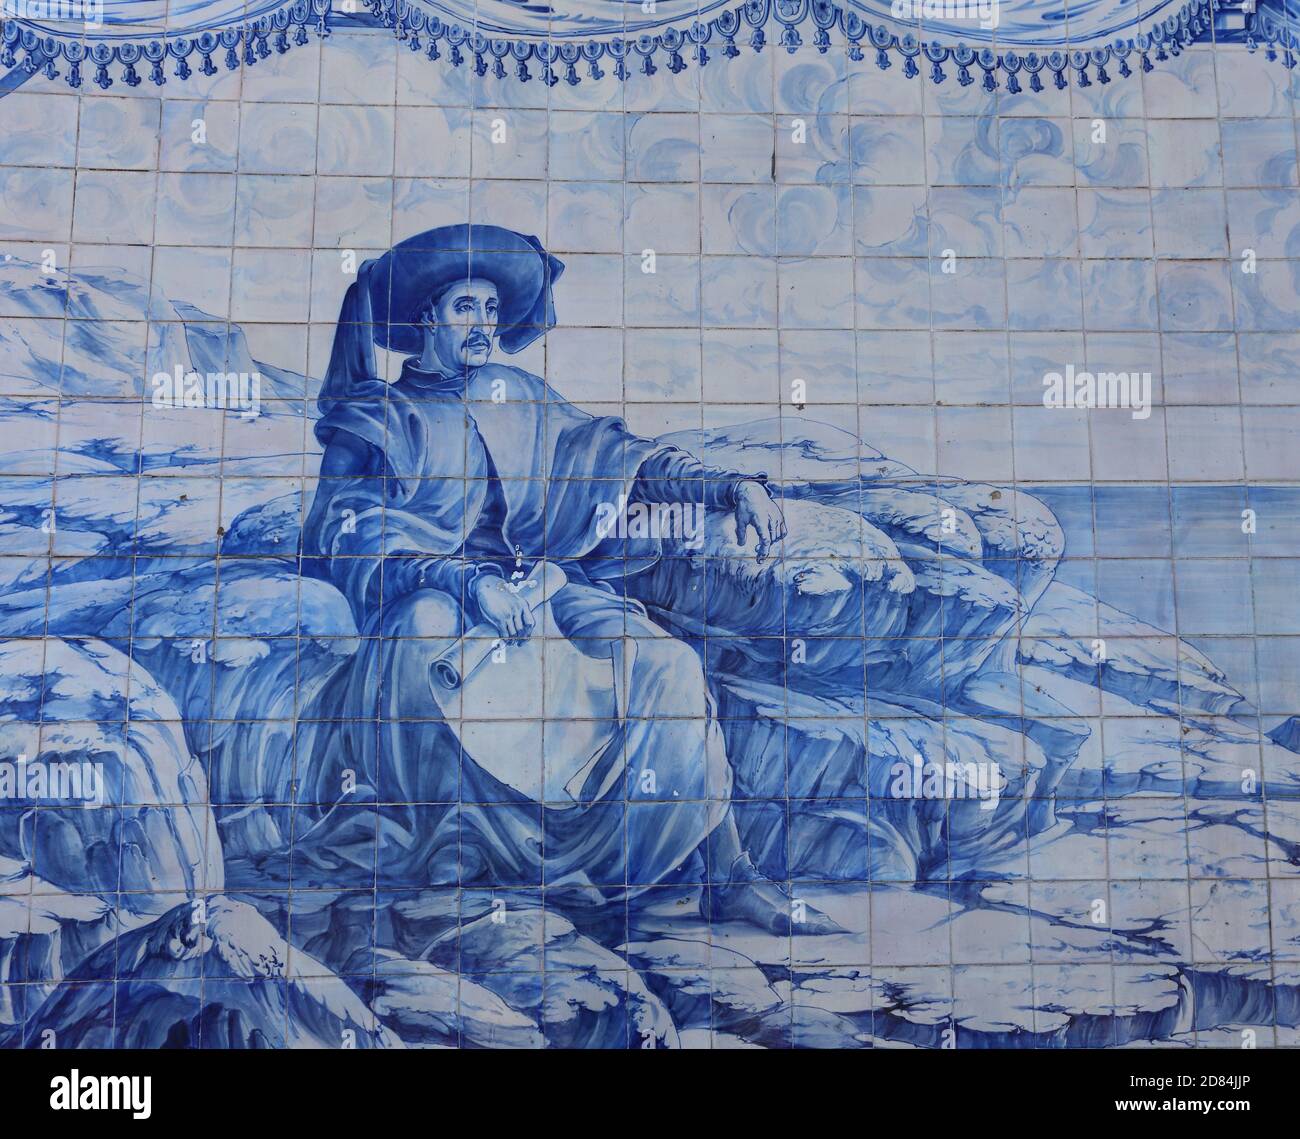 Portugal, Lissabon, Oeiras. Historische blaue und weiße Azulejo Keramikfliesen, die den portugiesischen Prinzen darstellen - 'Henry der Navigator'. Stockfoto